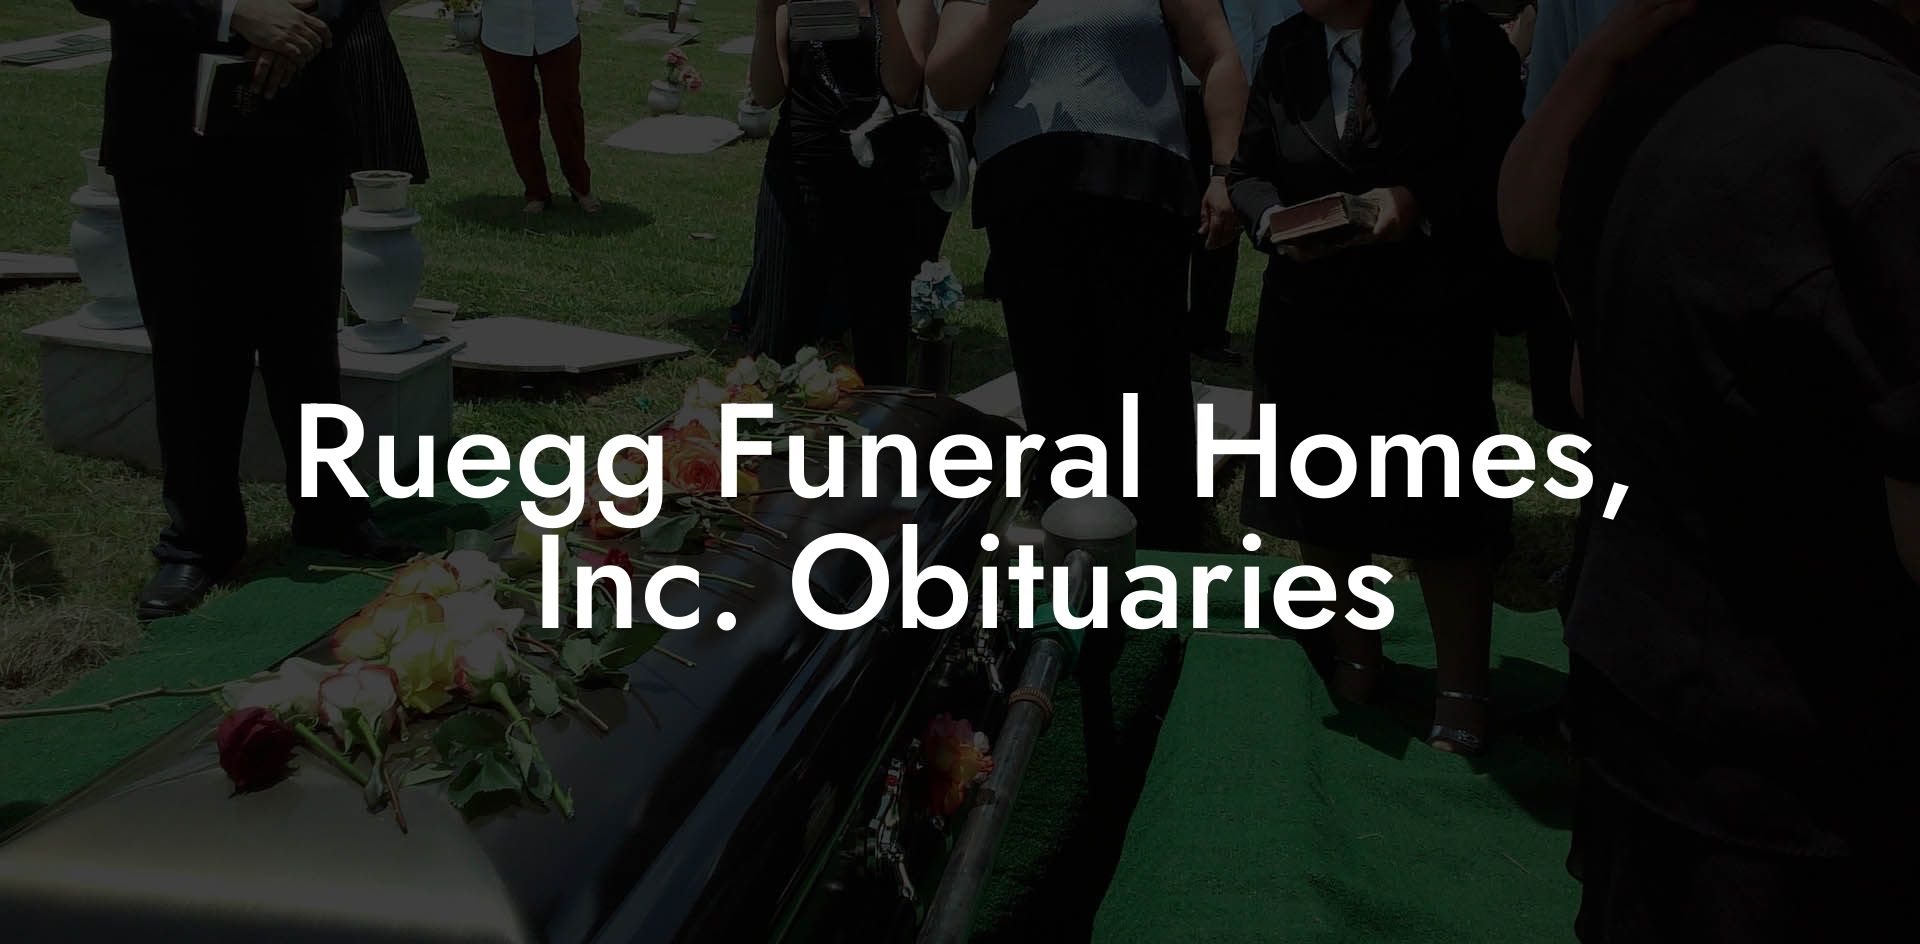 Ruegg Funeral Homes, Inc. Obituaries